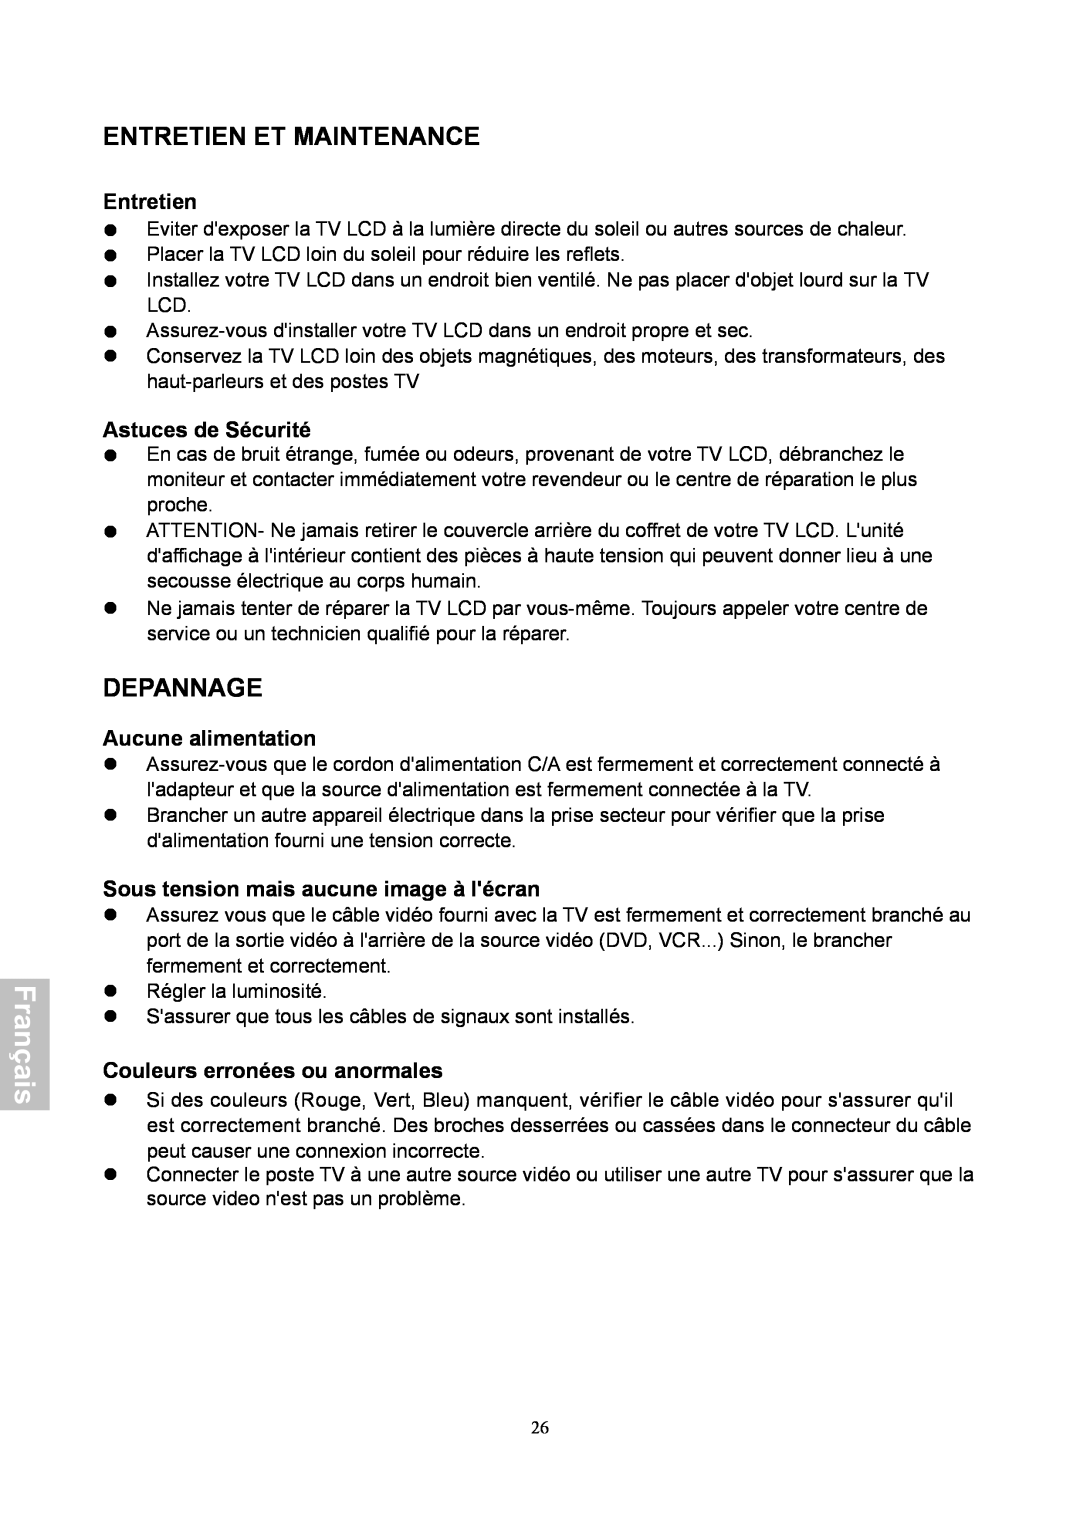 HANNspree XV Series 32 manual Entretien Et Maintenance, Depannage, Astuces de Sécurité, Aucune alimentation, Français 